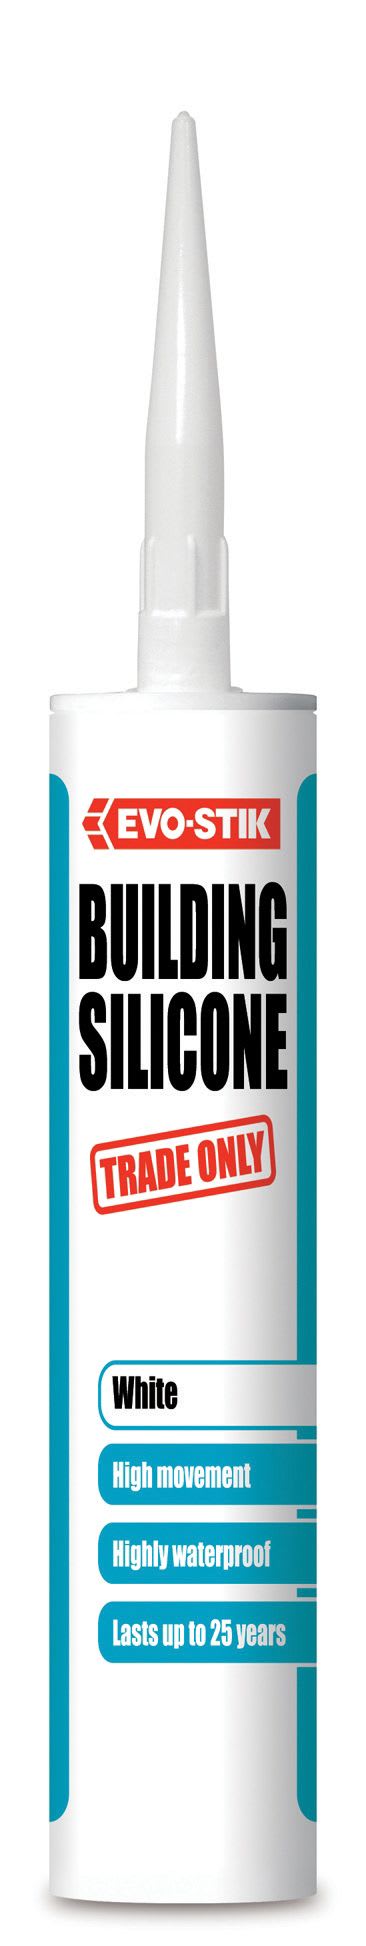 Evo-Stik Building Silicone Sealant - White 280ml